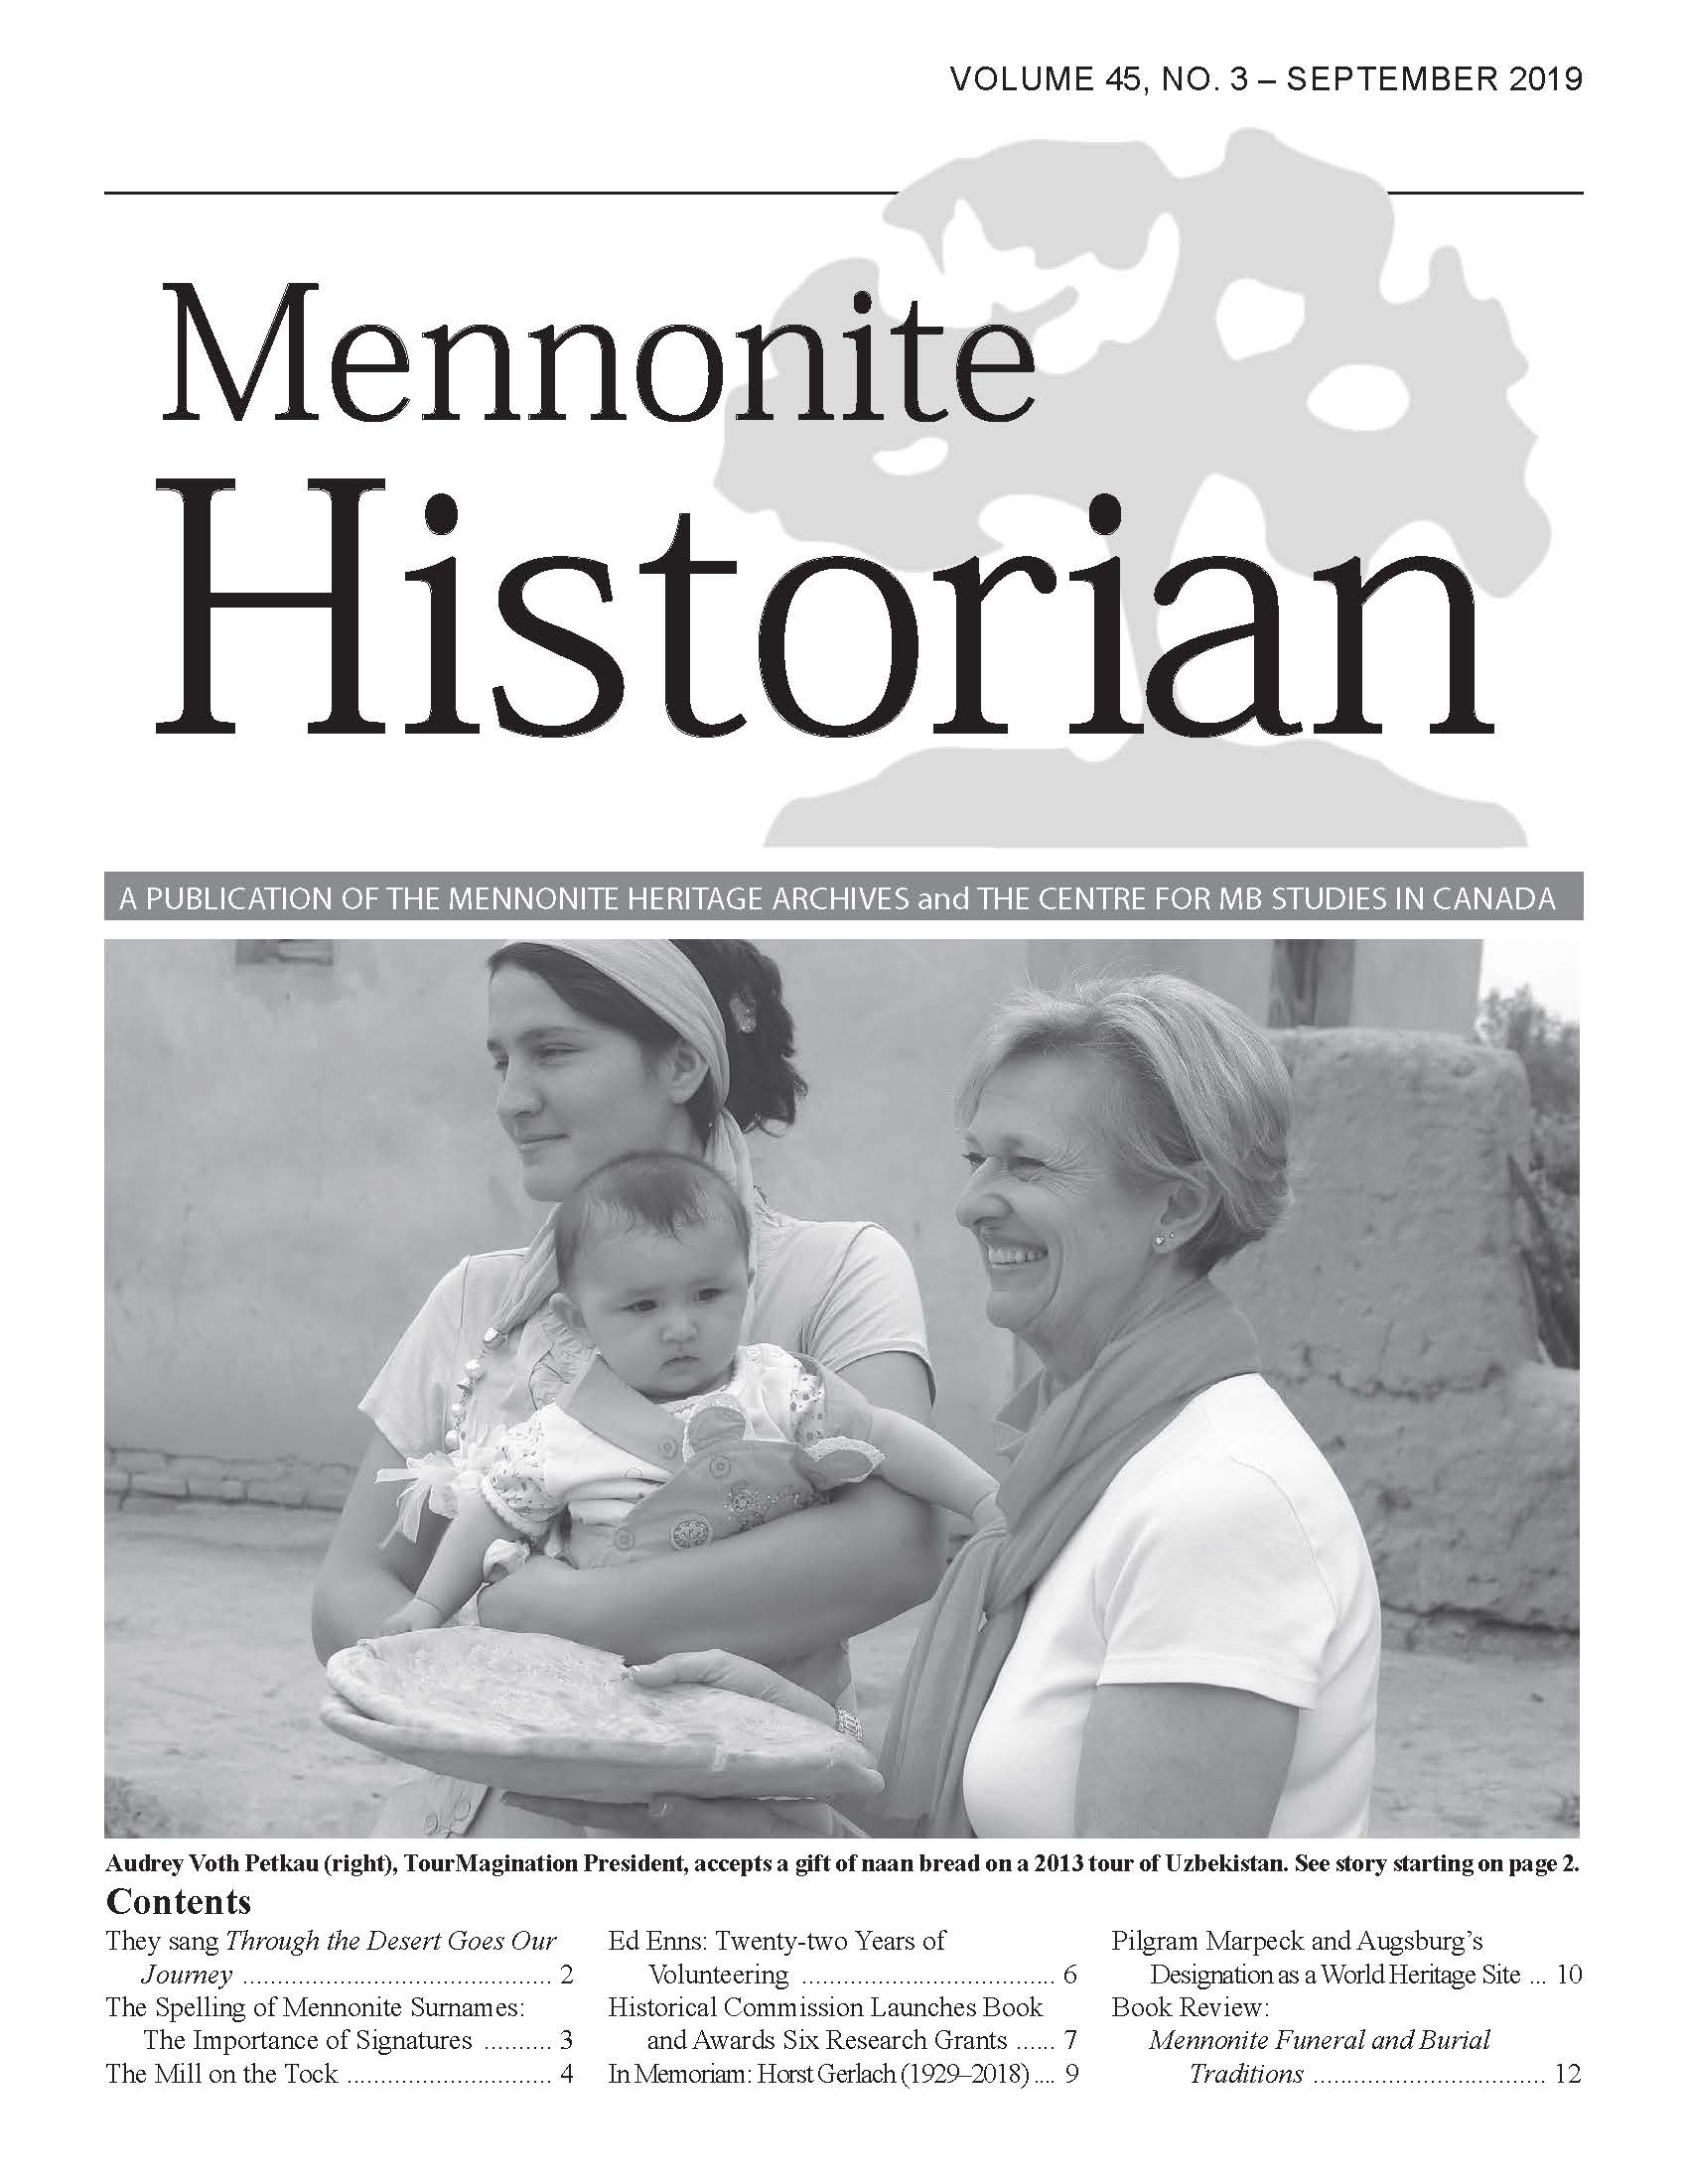 Mennonite Historian (September 2019)